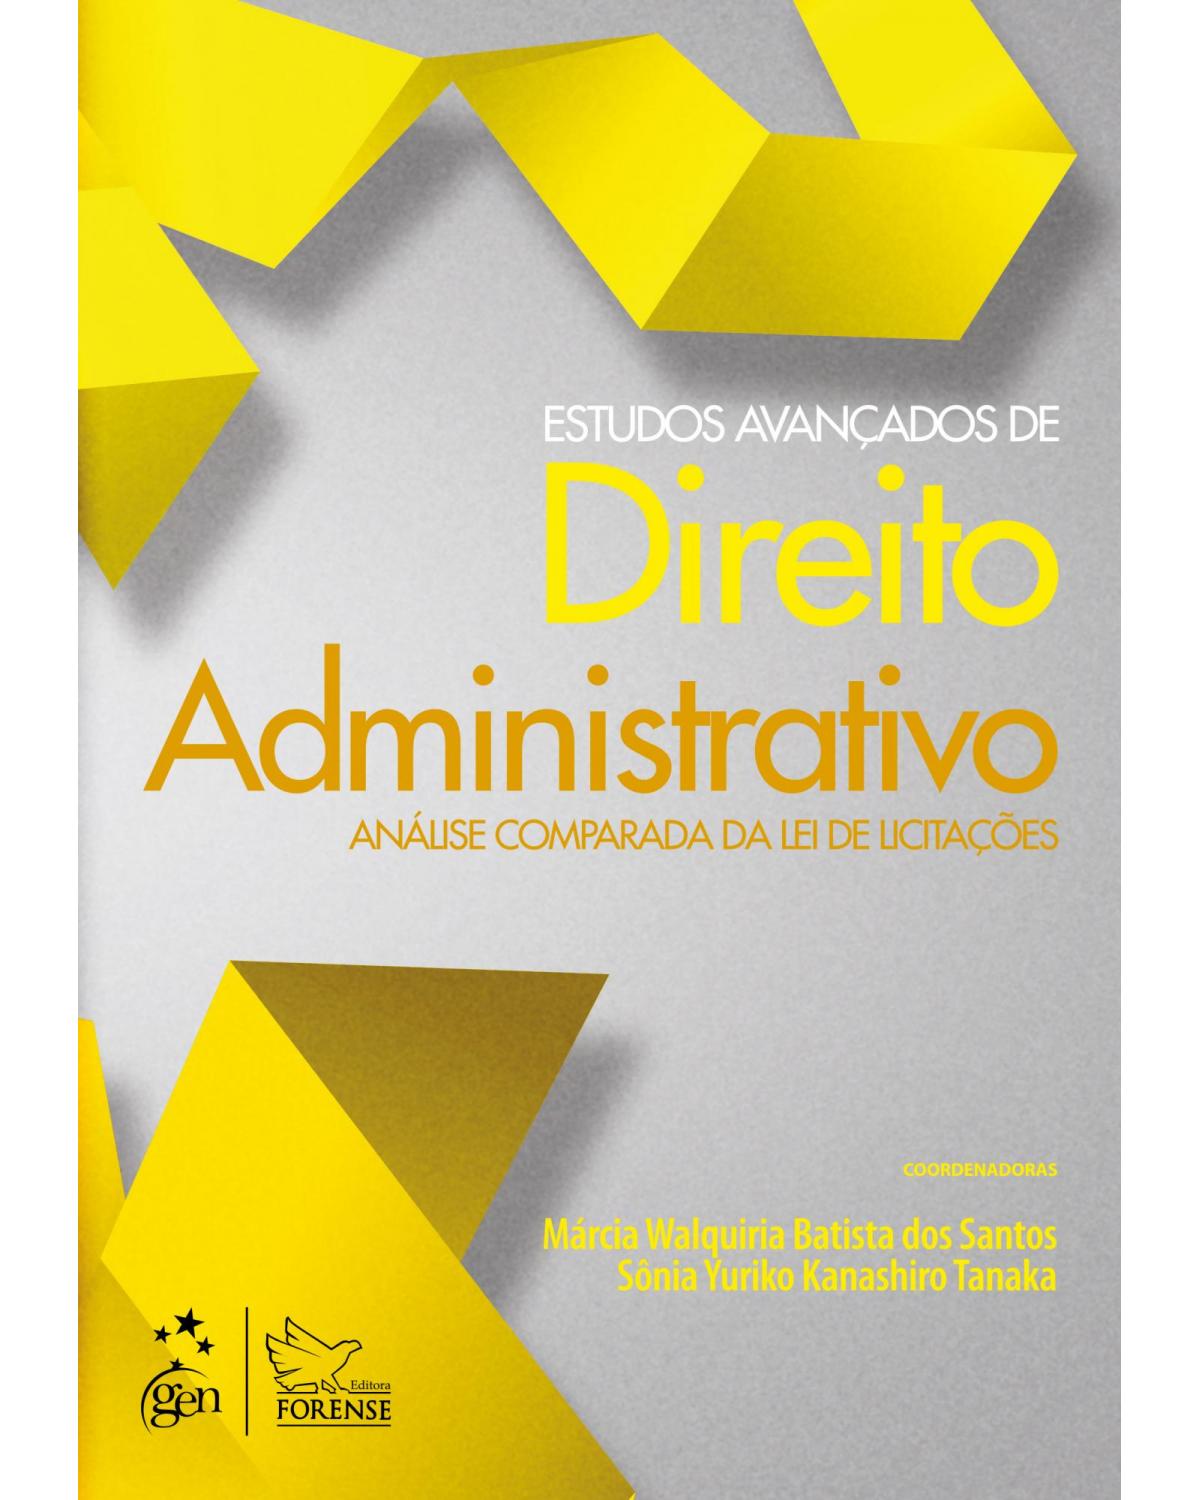 Estudos avançados de direito administrativo - Análise comparada da lei de licitações - 1ª Edição | 2013